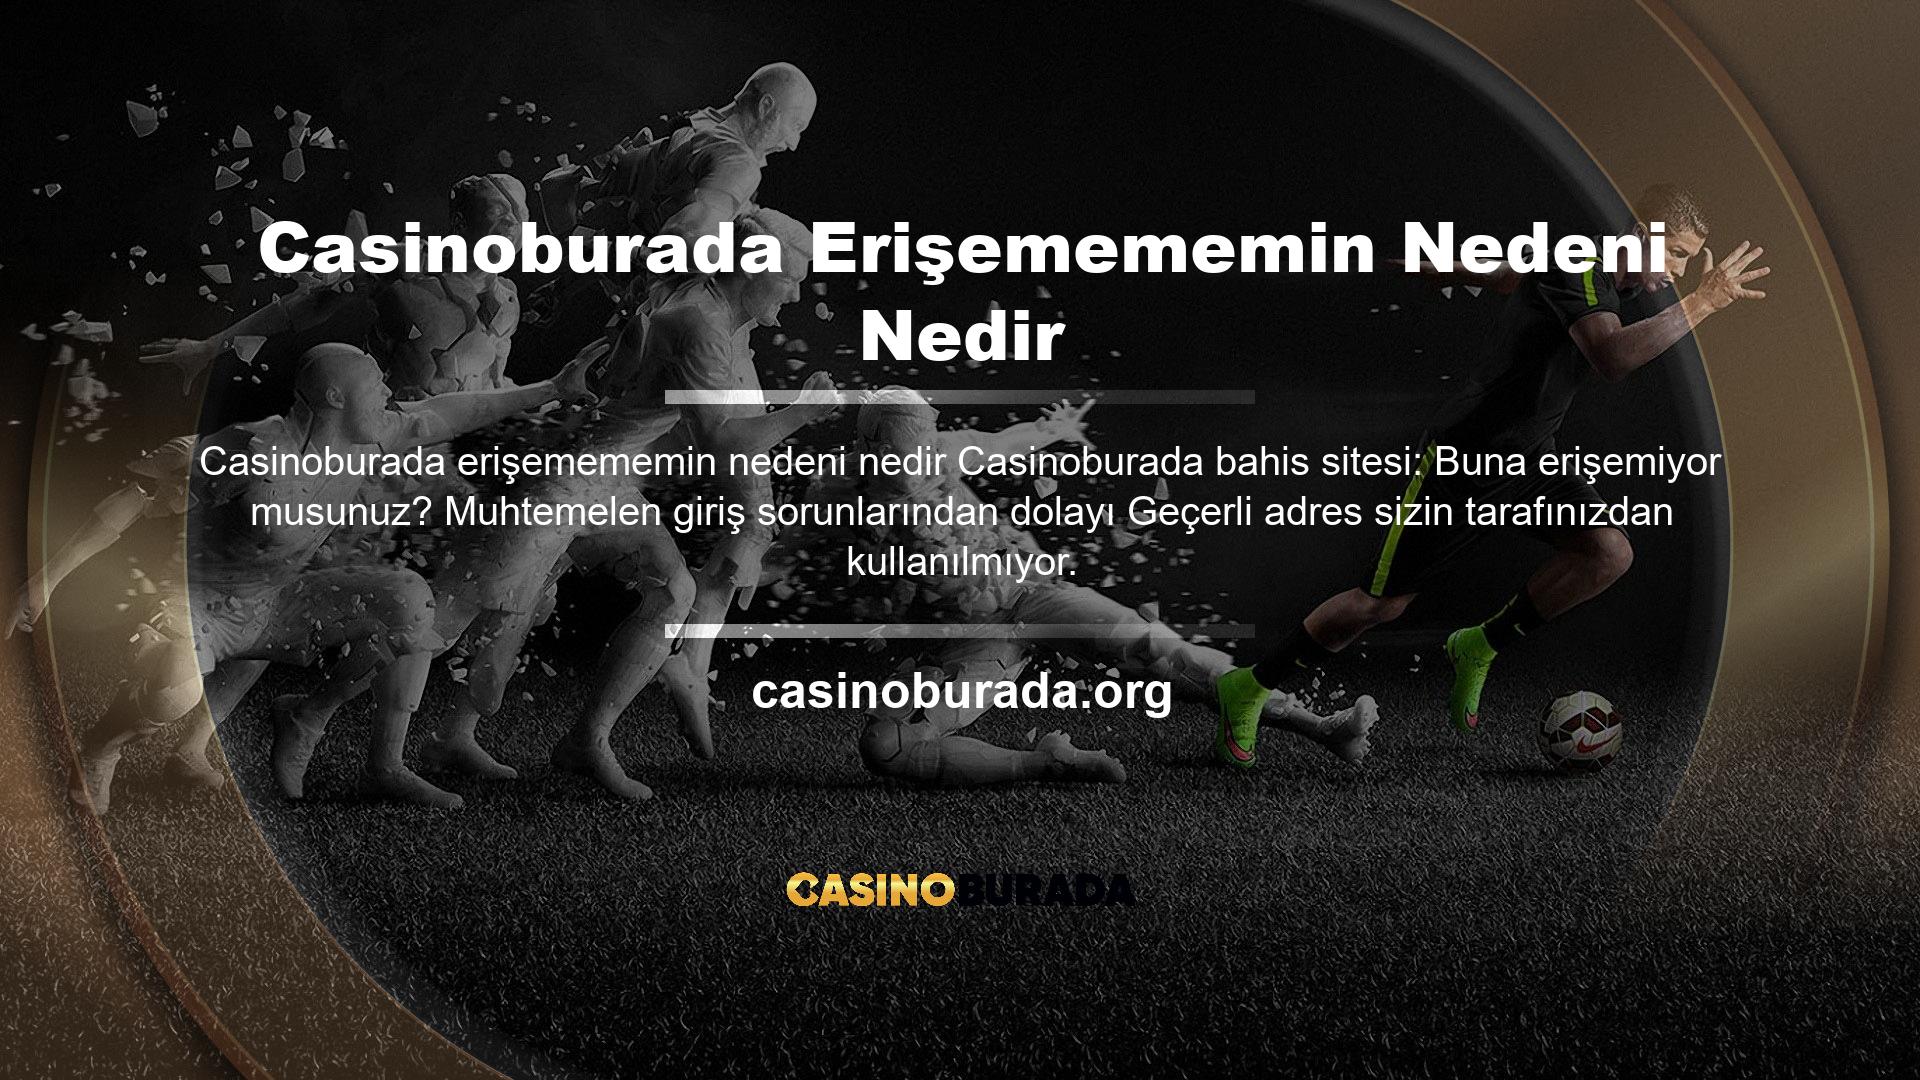 Casinoburada gibi uluslararası bahis siteleri dünya çapında mevcuttur